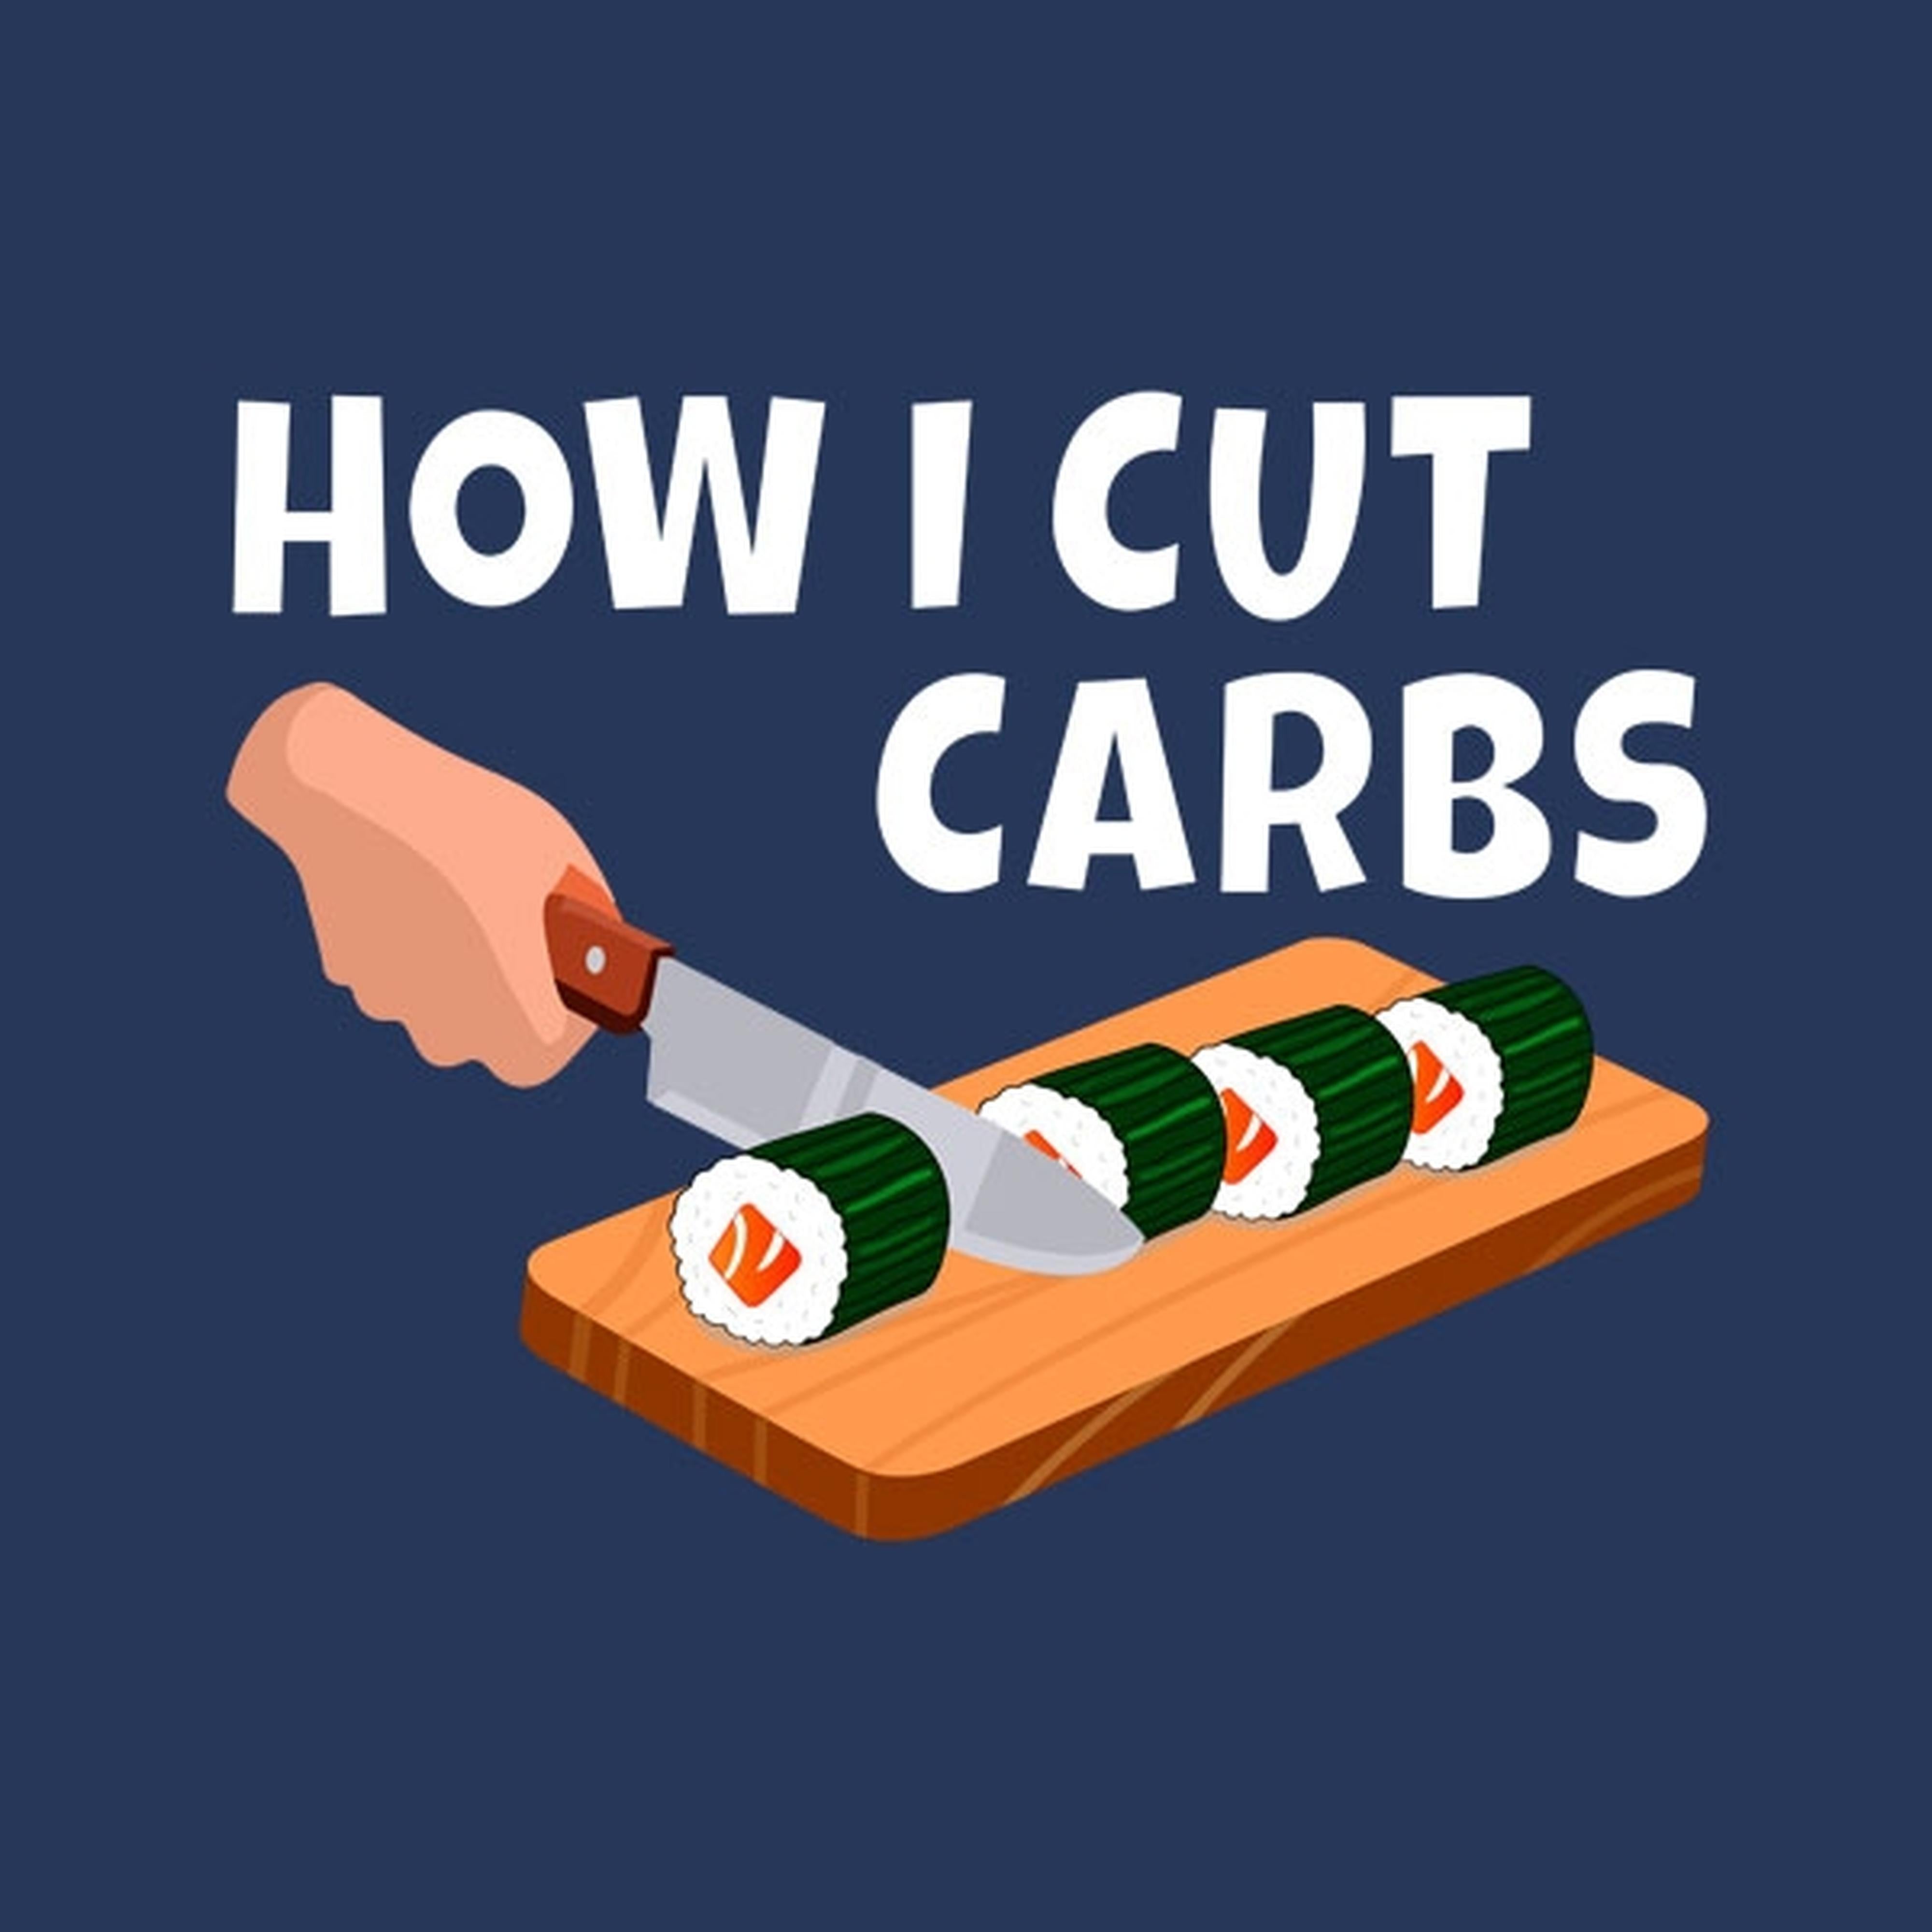 How I cut carbs (sushi) - T-shirt